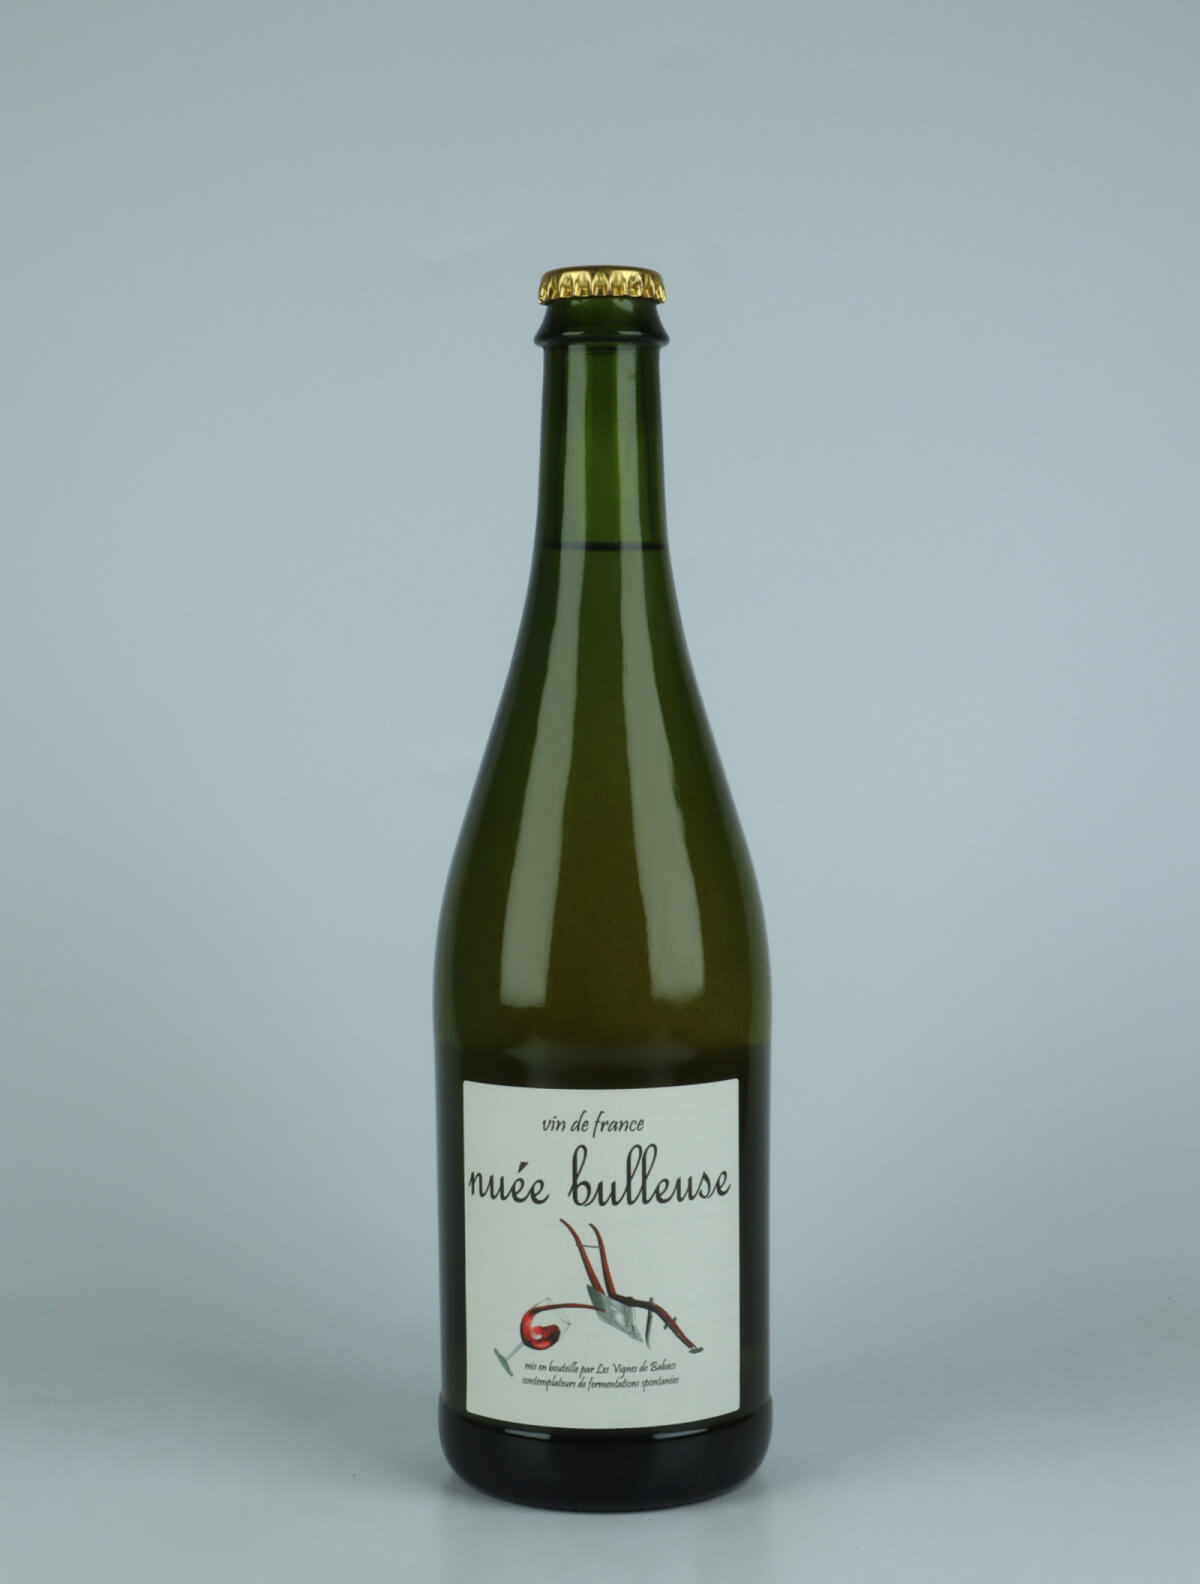 A bottle 2019 Nueé bulleuse Sparkling from Les Vignes de Babass, Loire in France